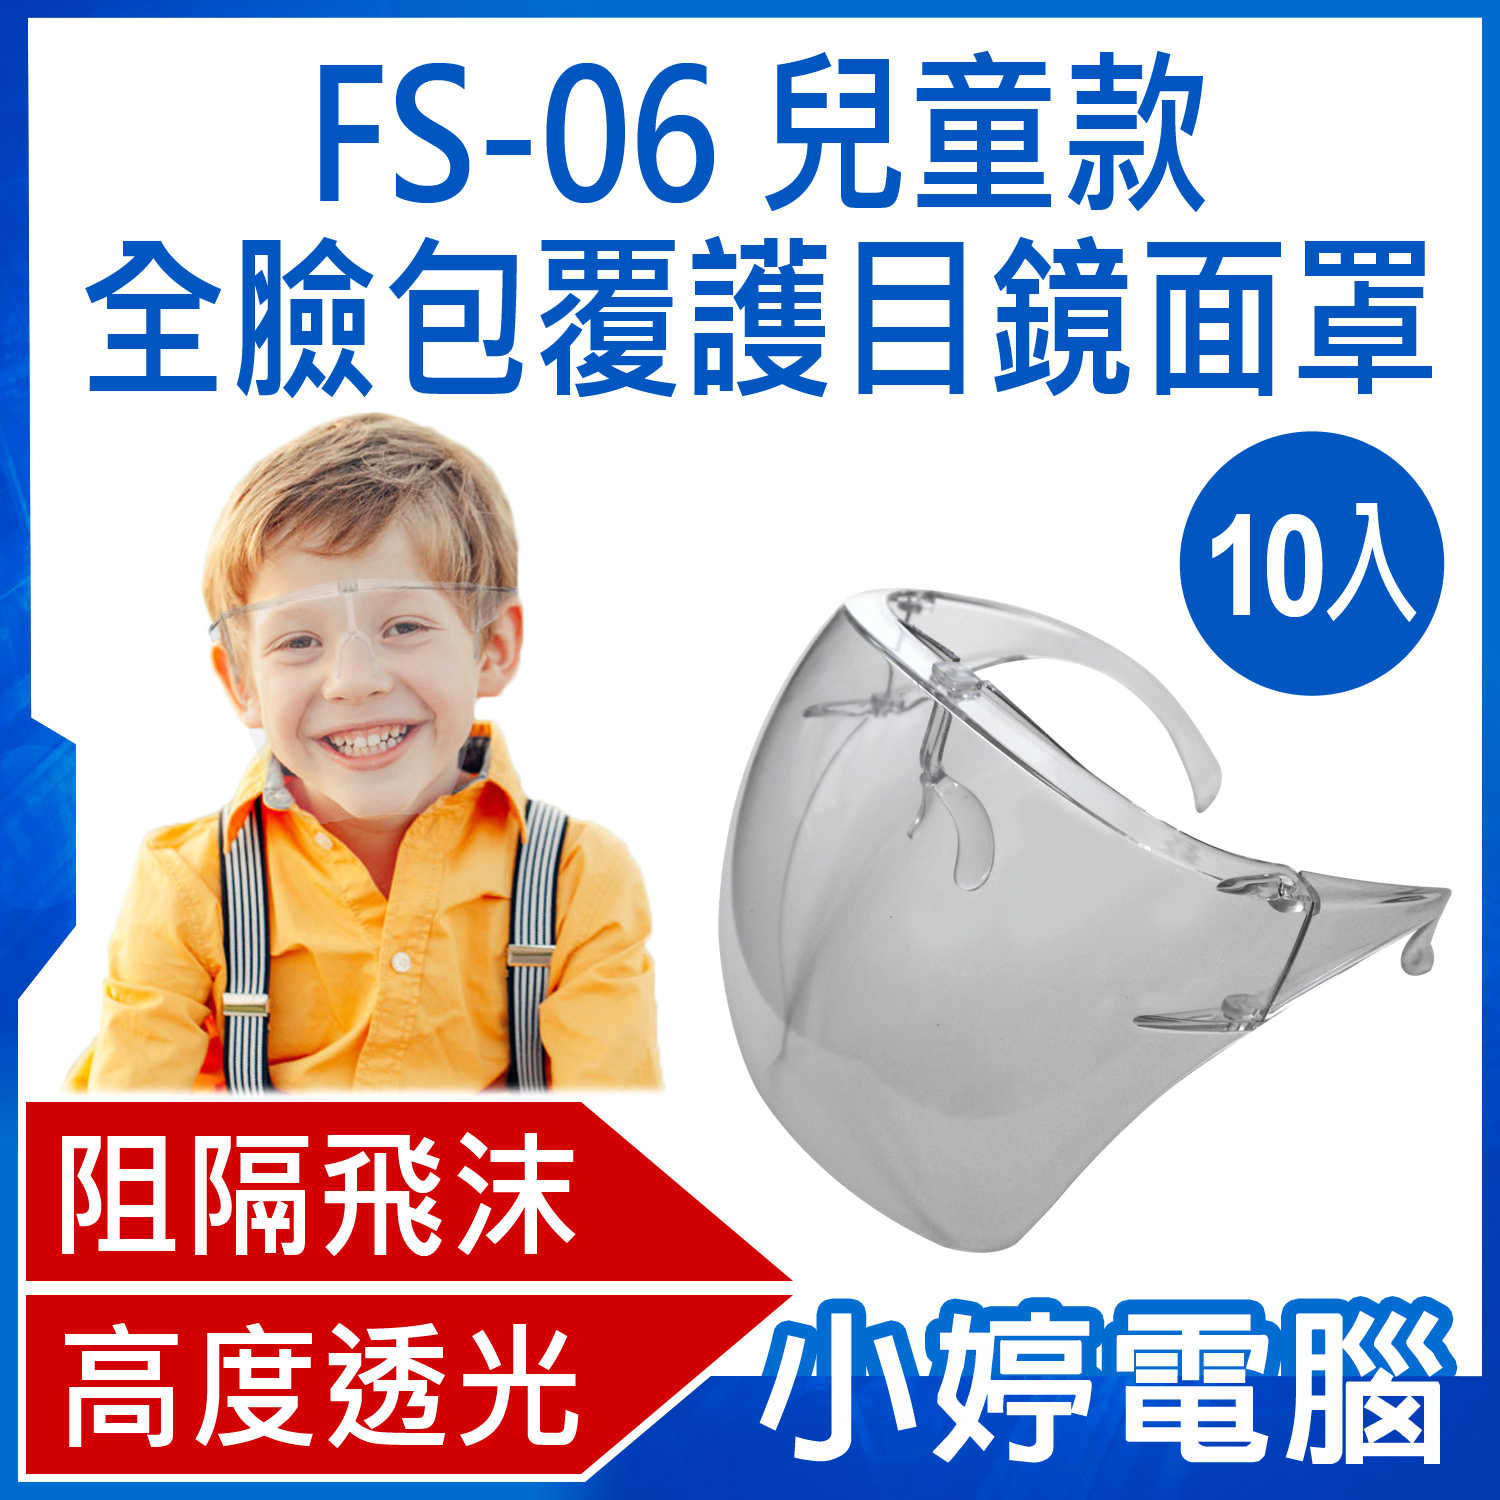 【小婷電腦】FS-06 全臉包覆護目鏡面罩 兒童款 防飛沫噴濺 兒童面罩 高透光 全臉防護 10入